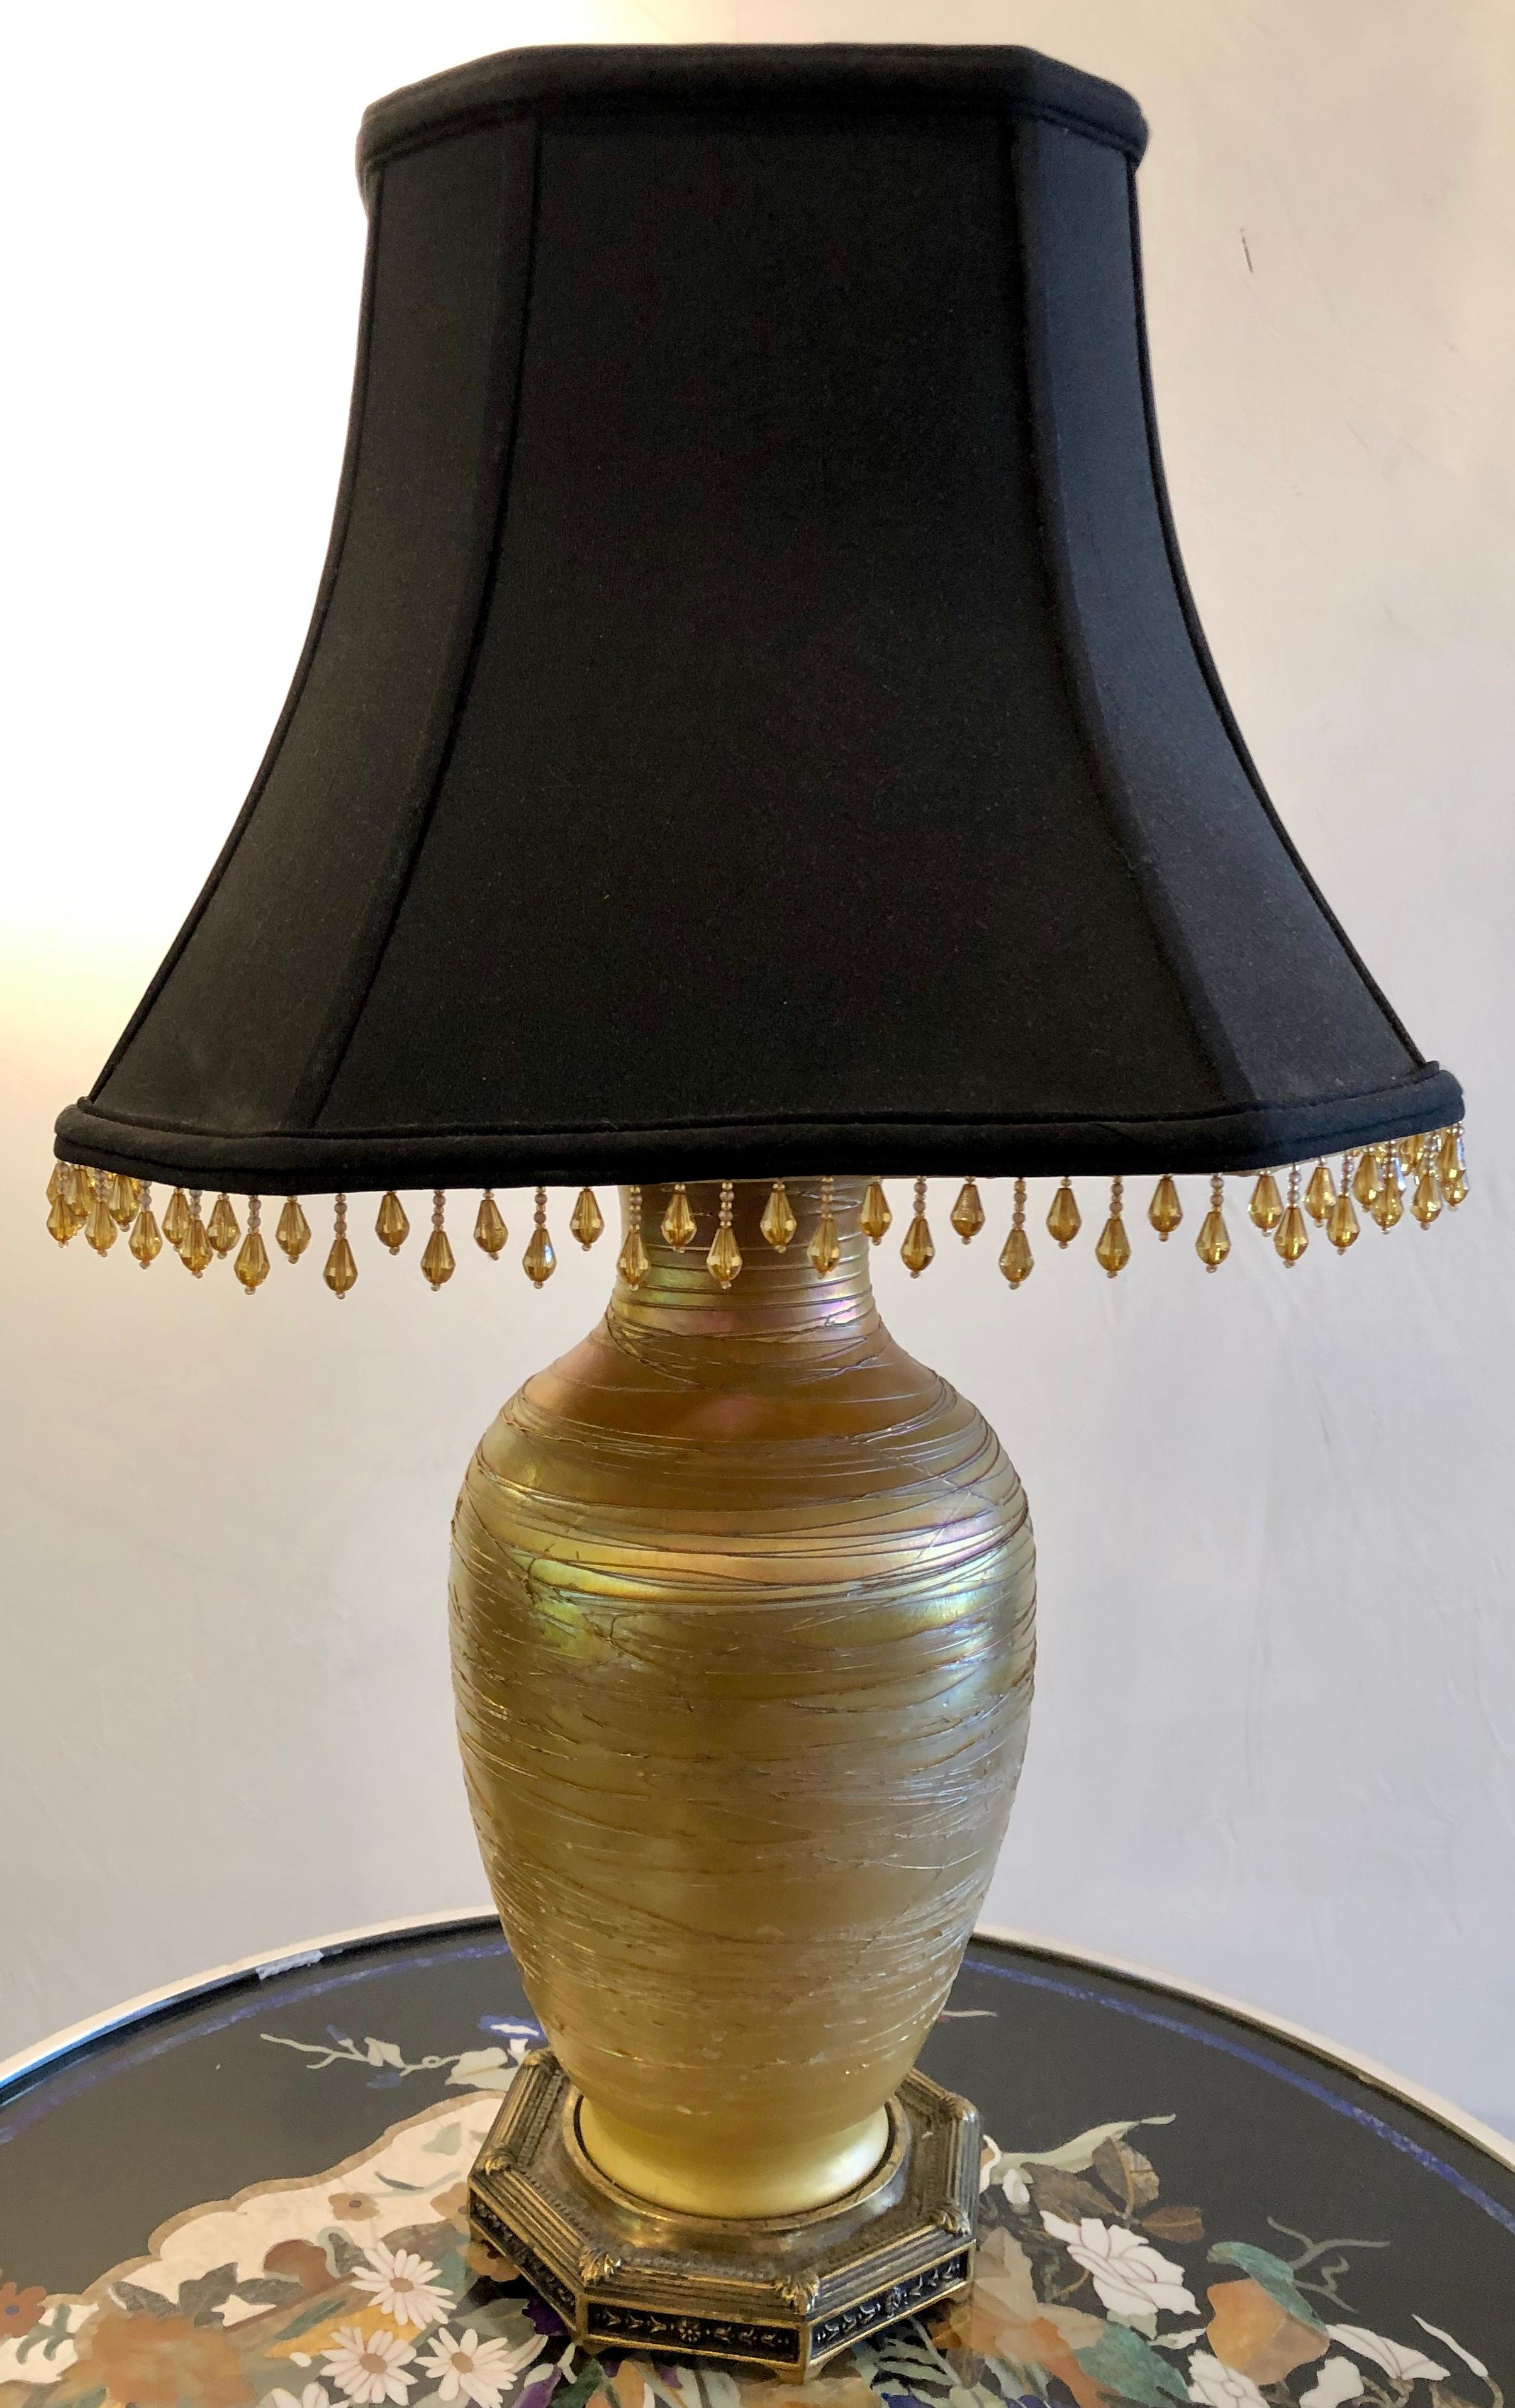 Lampe de table en verre de style Art Déco Durand fashion avec abat-jour personnalisé.
ESX.